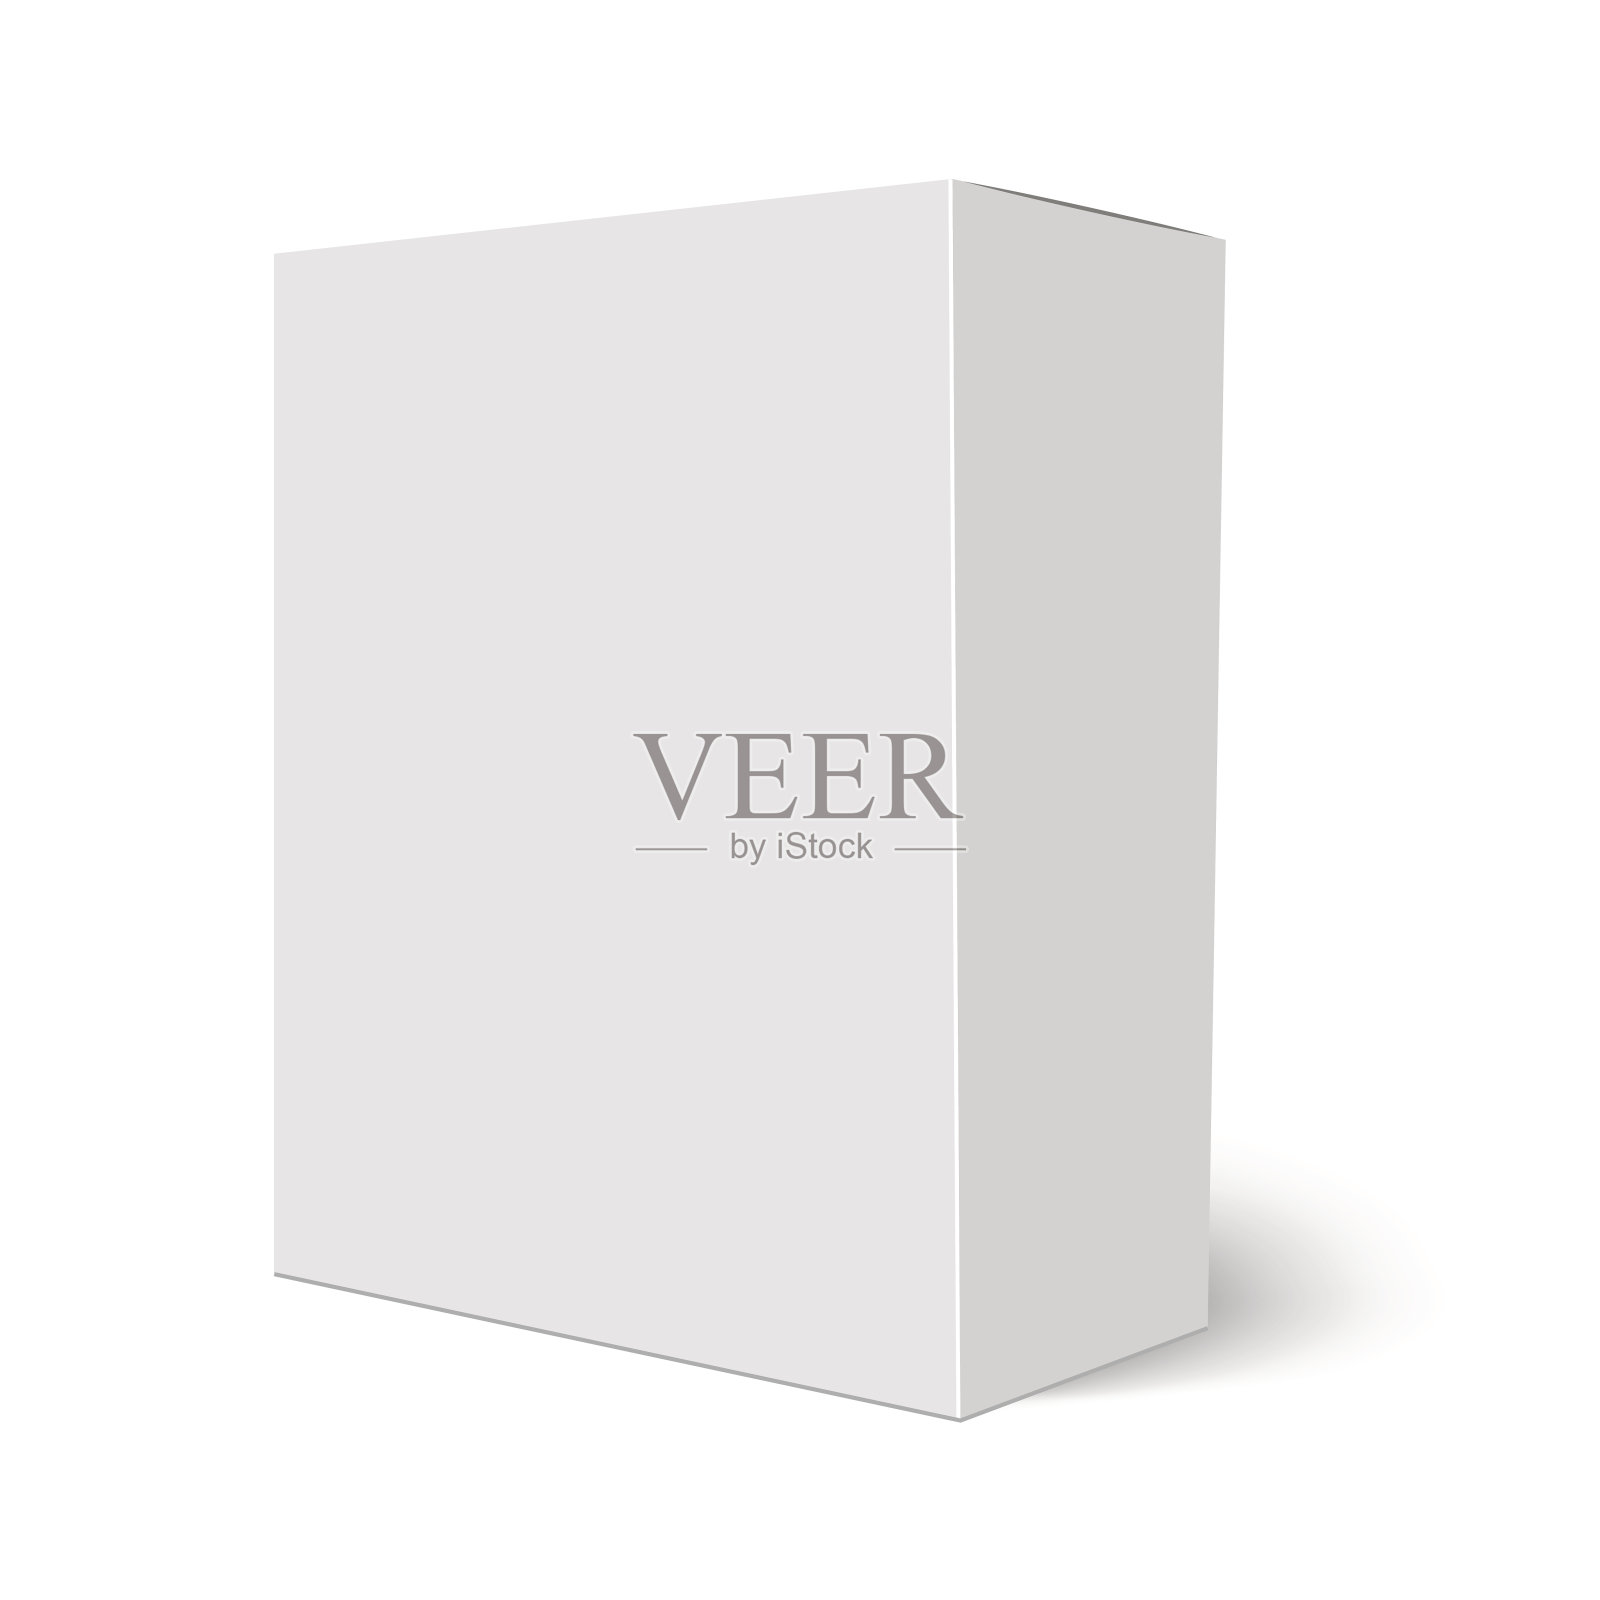 空白垂直纸盒模板立在白色背景上。矢量图插画图片素材